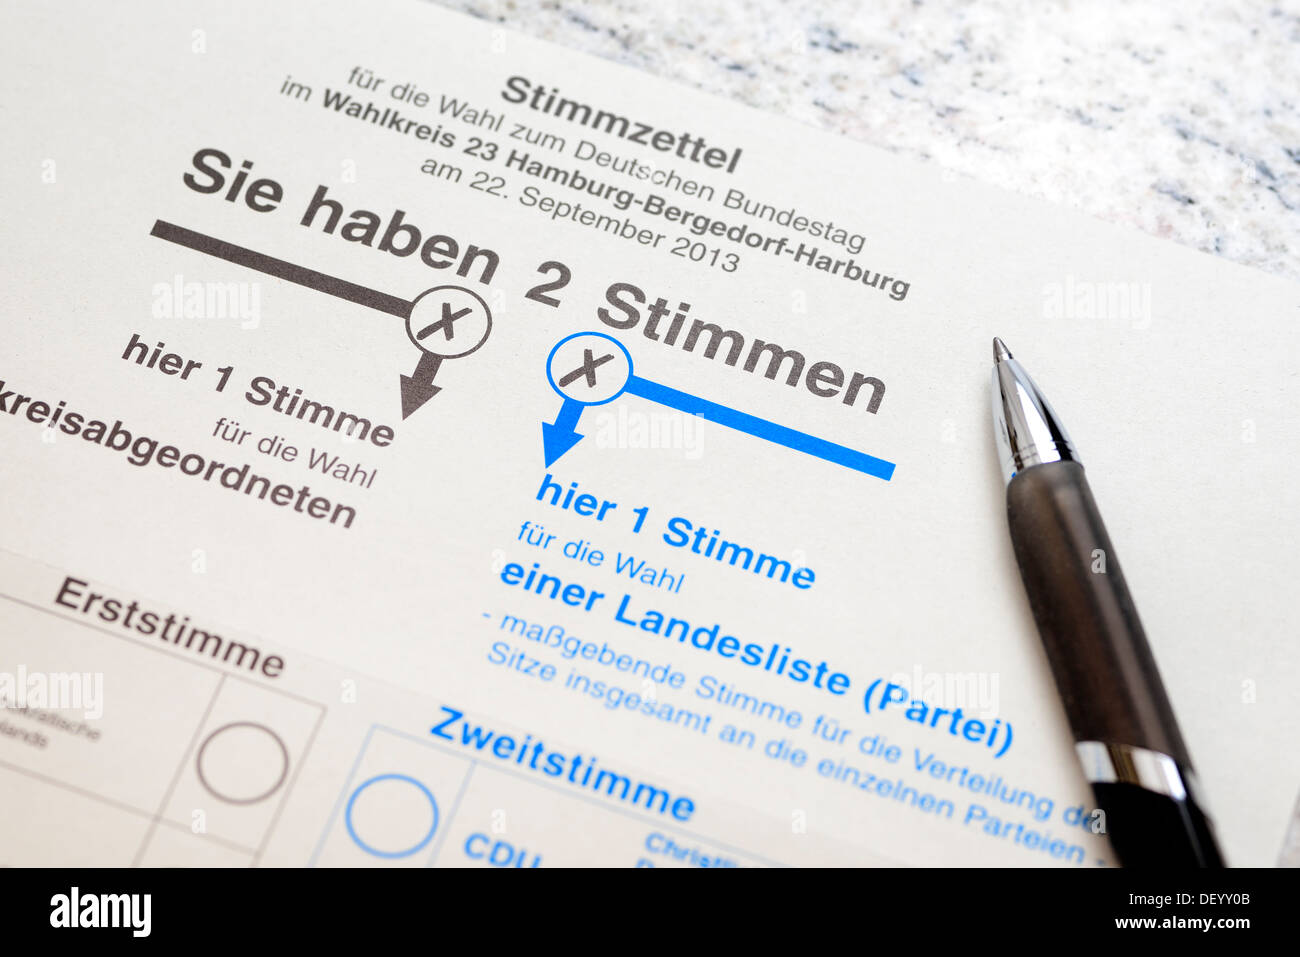 Vote for the parliamentary elections, Stimmzettel für die Bundestagswahl Stock Photo